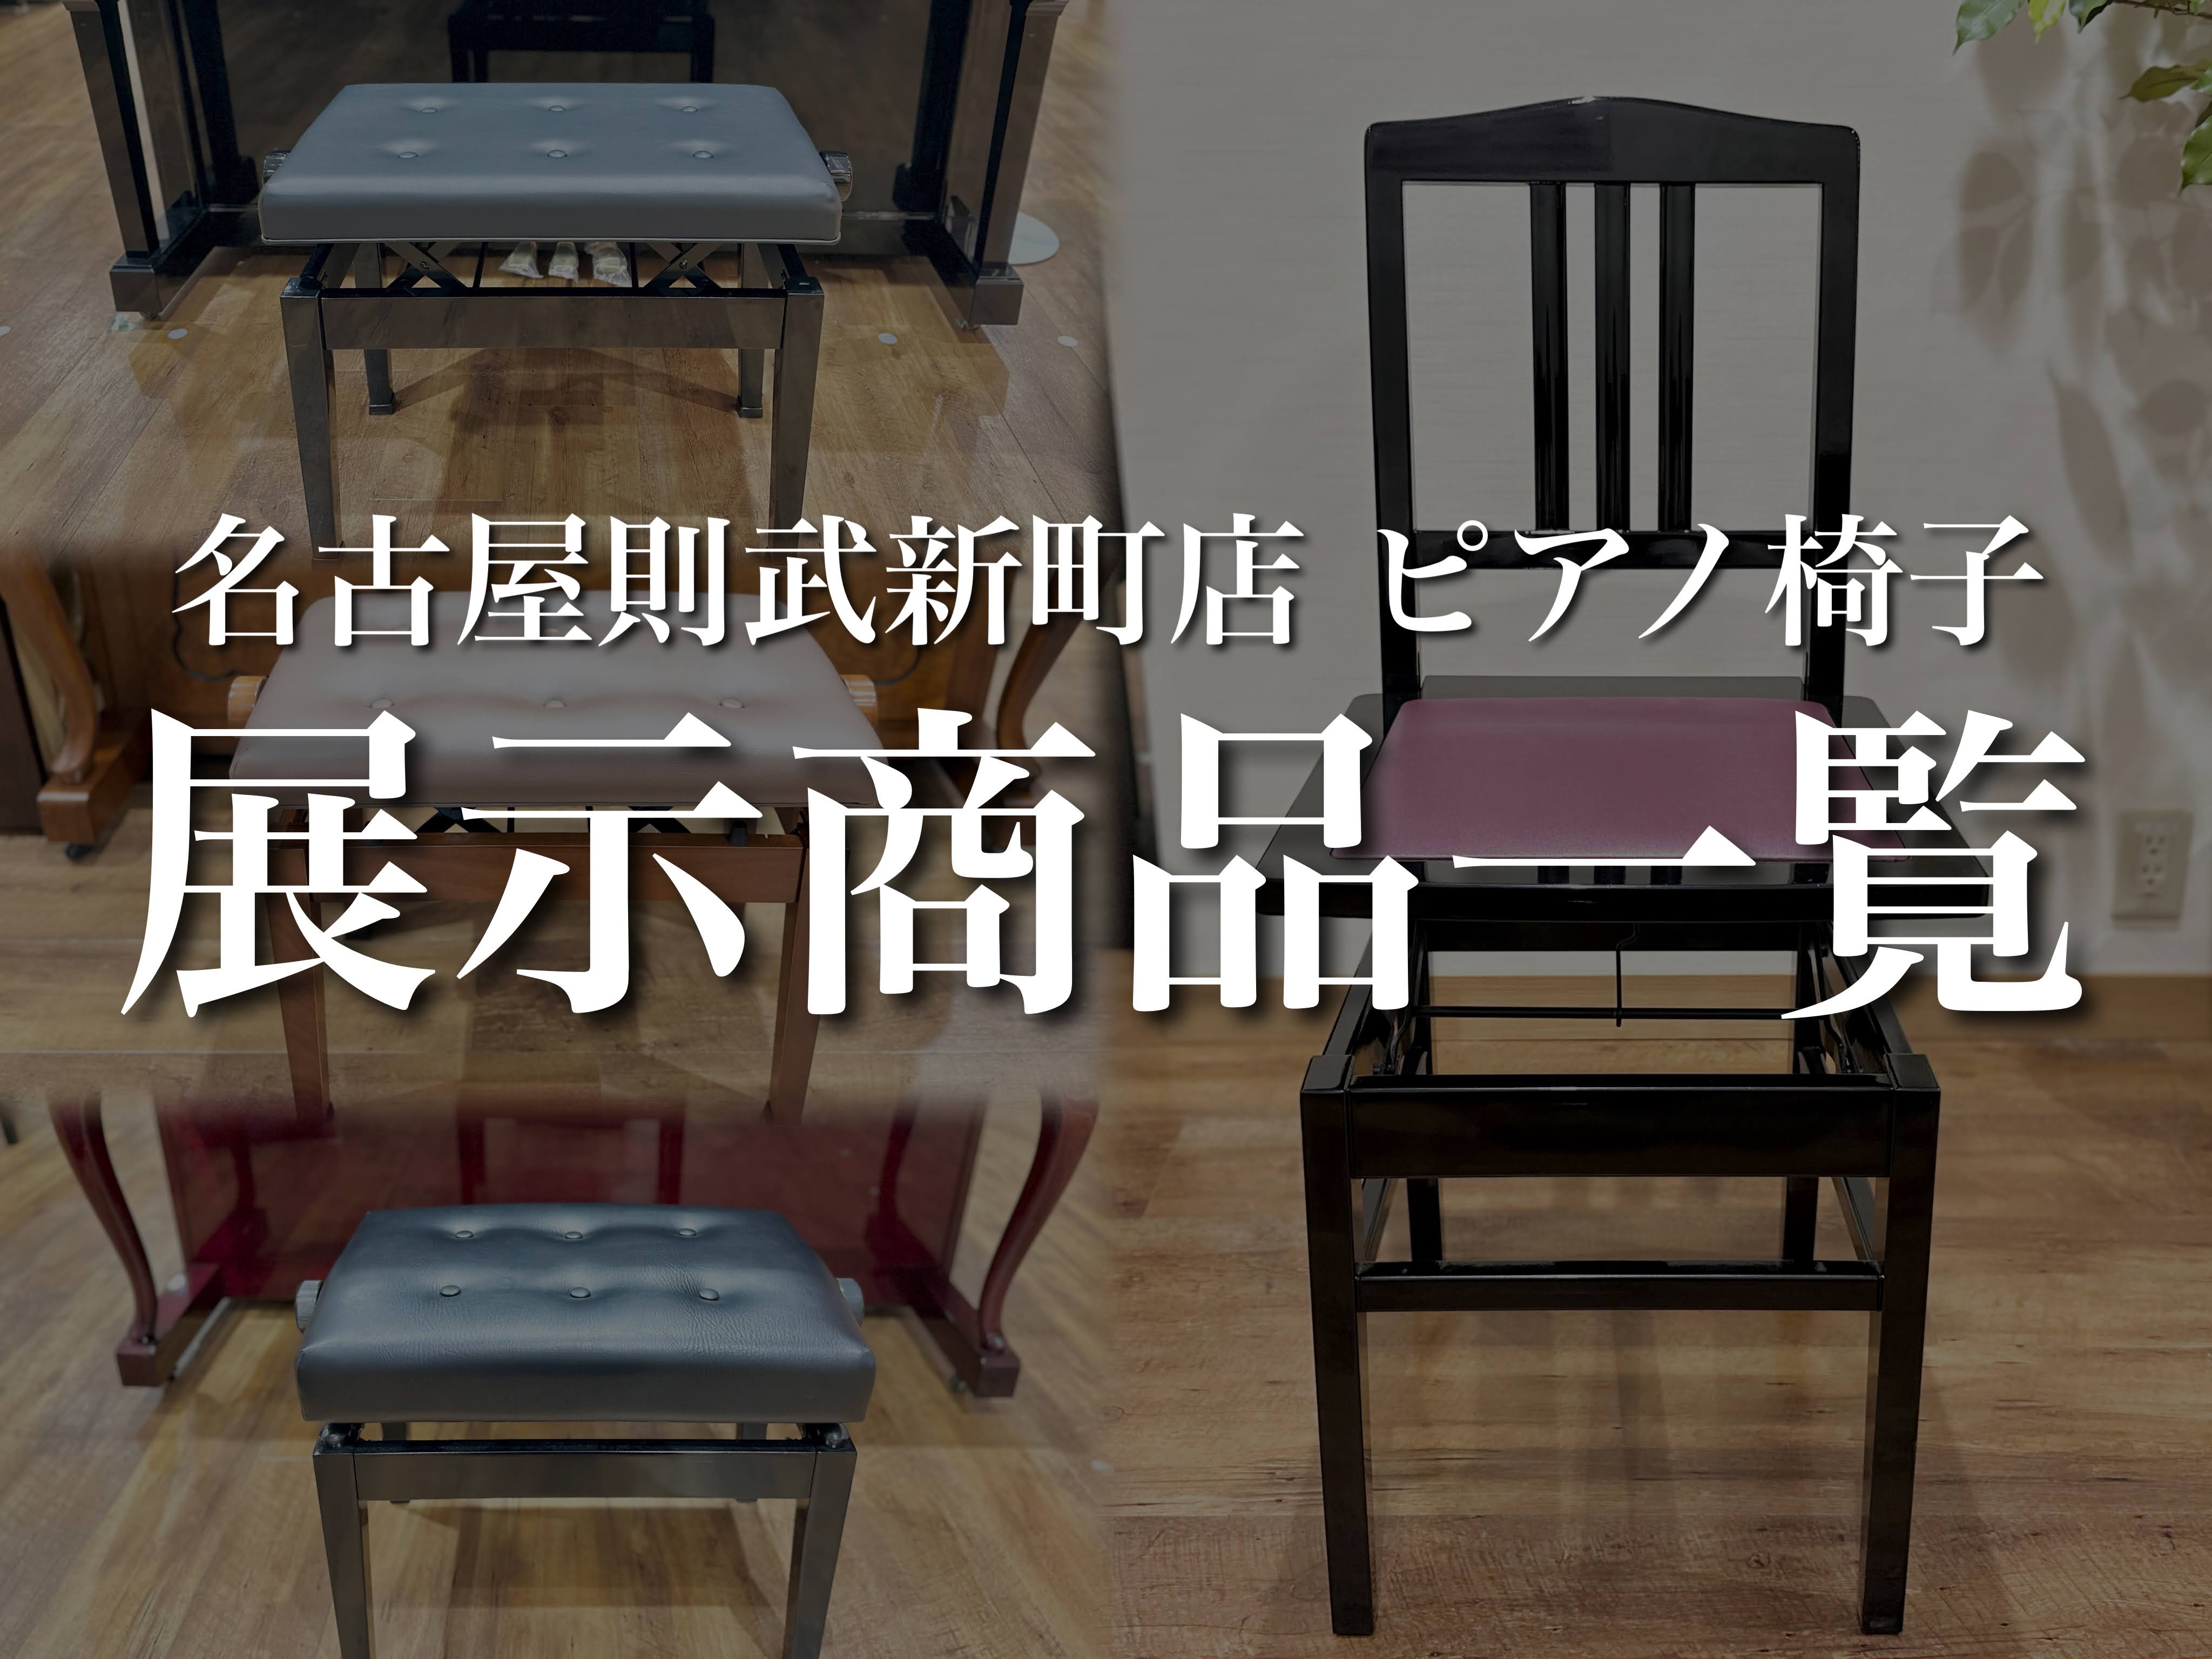 名古屋市のピアノ専門店】島村楽器名古屋則武新町店 ピアノ椅子の